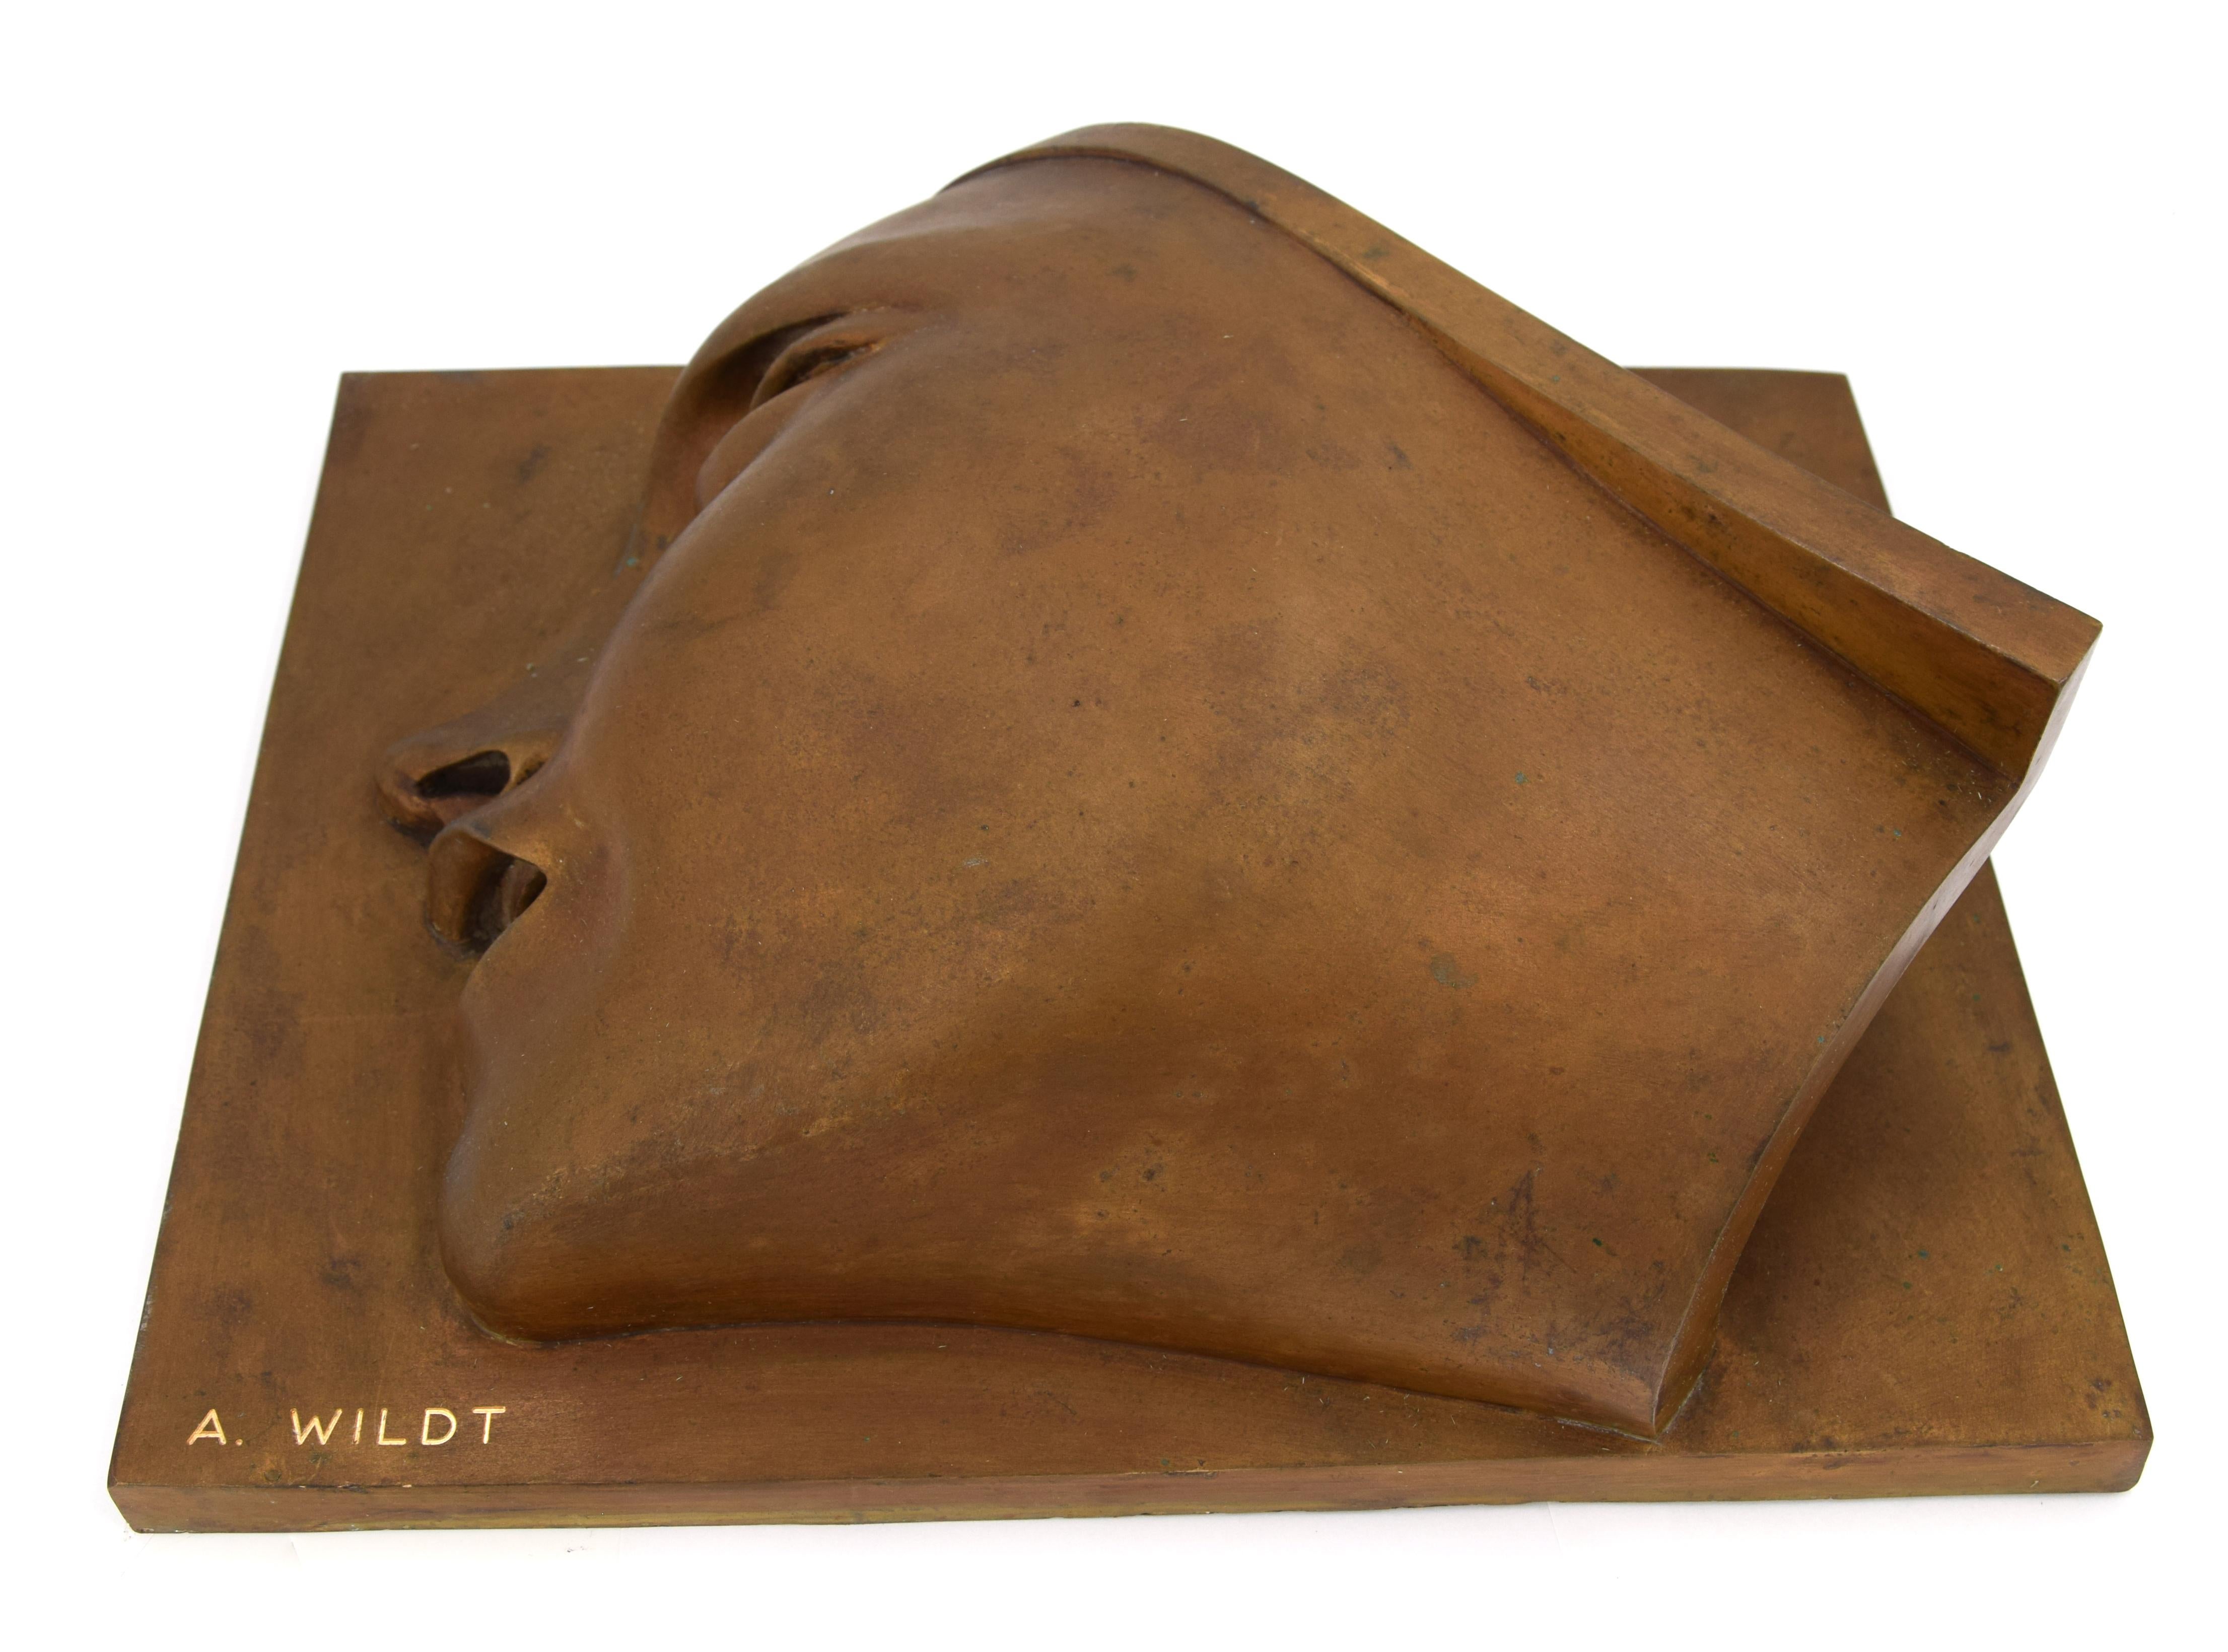 Victor Victory - Bronzeskulptur nach A. Wildt - 1990 – Sculpture von Adolfo Wildt